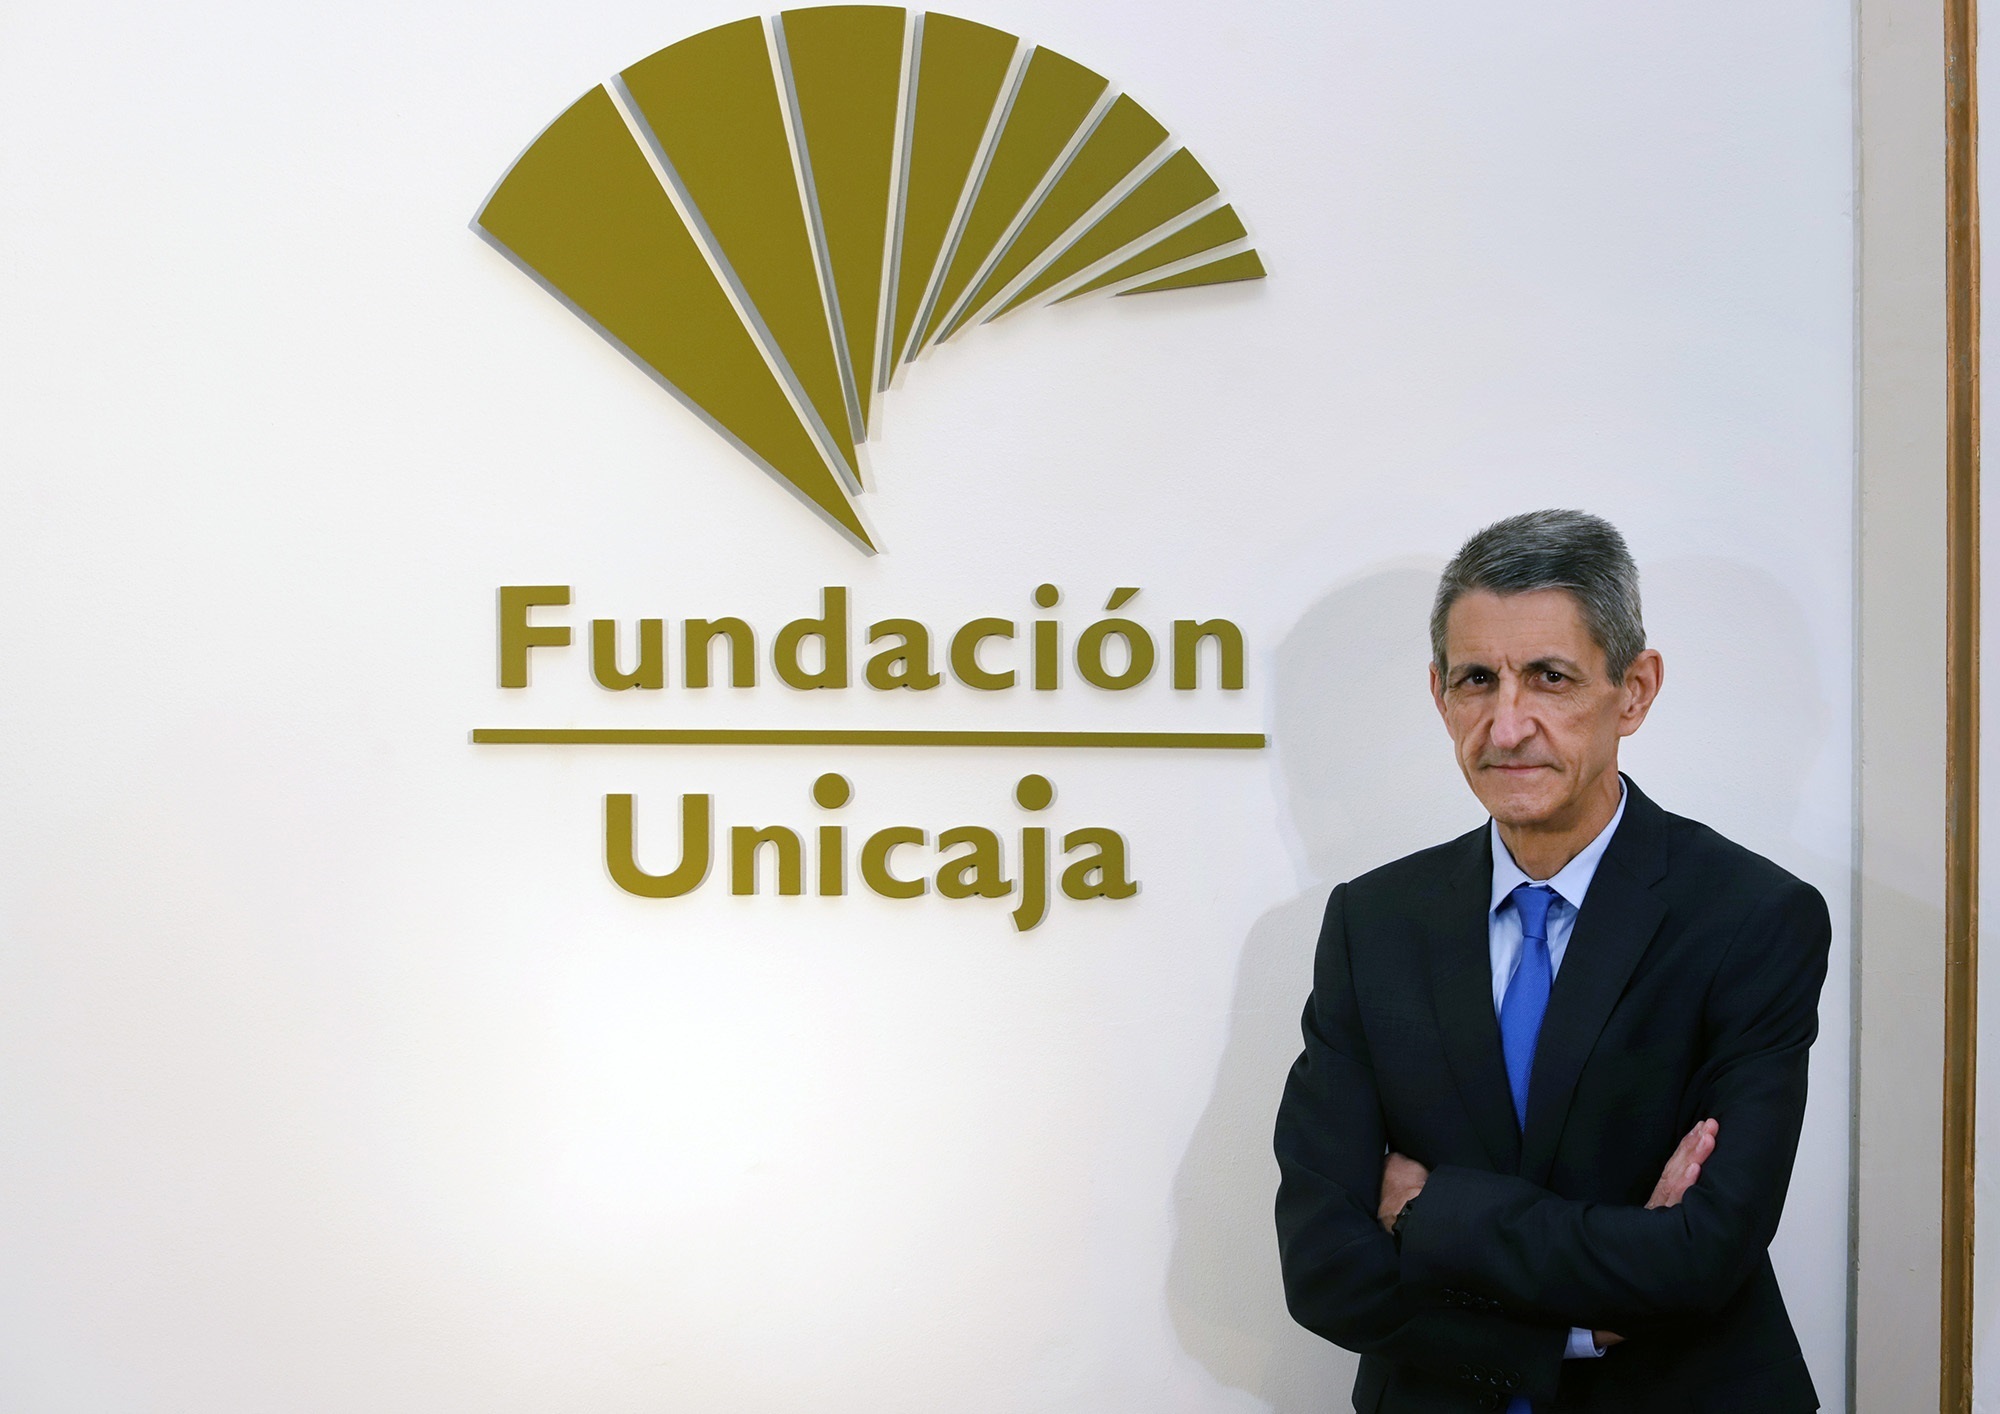 El patronato de la Fundación debate el ‘juego de sillas’ en Unicaja y pone en alerta al Banco de España